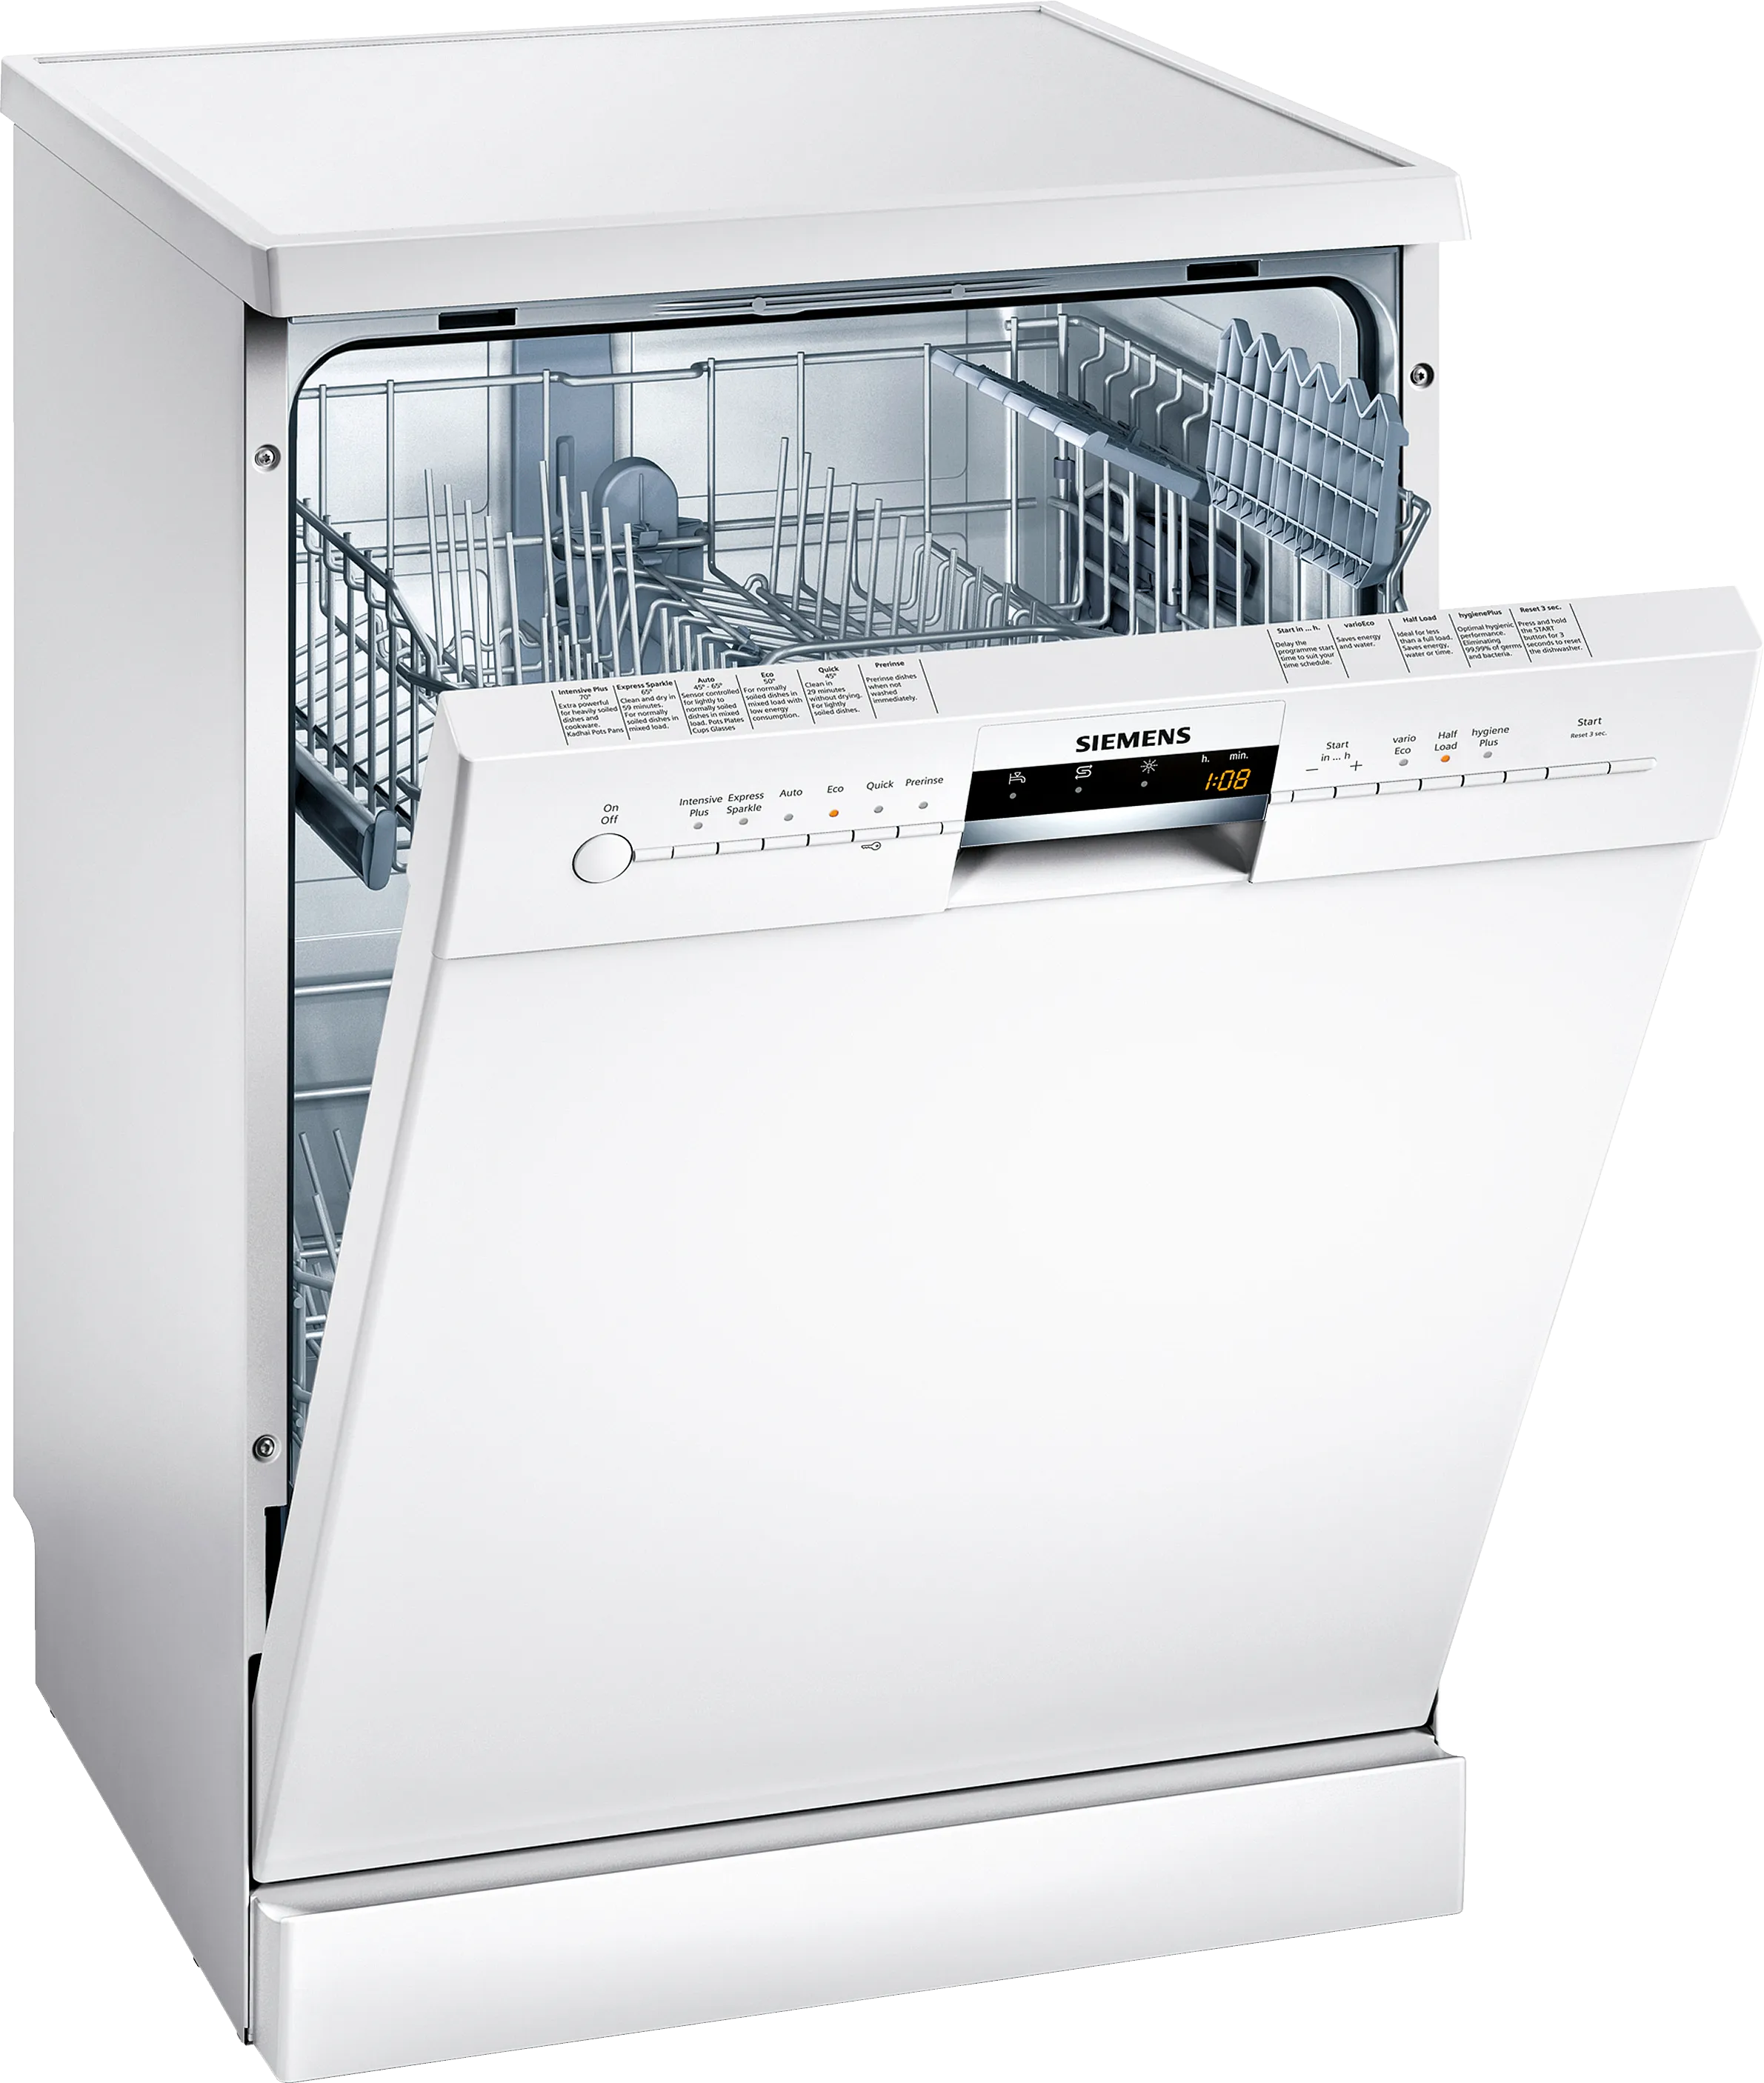 iQ500 free-standing dishwasher 60 cm White 